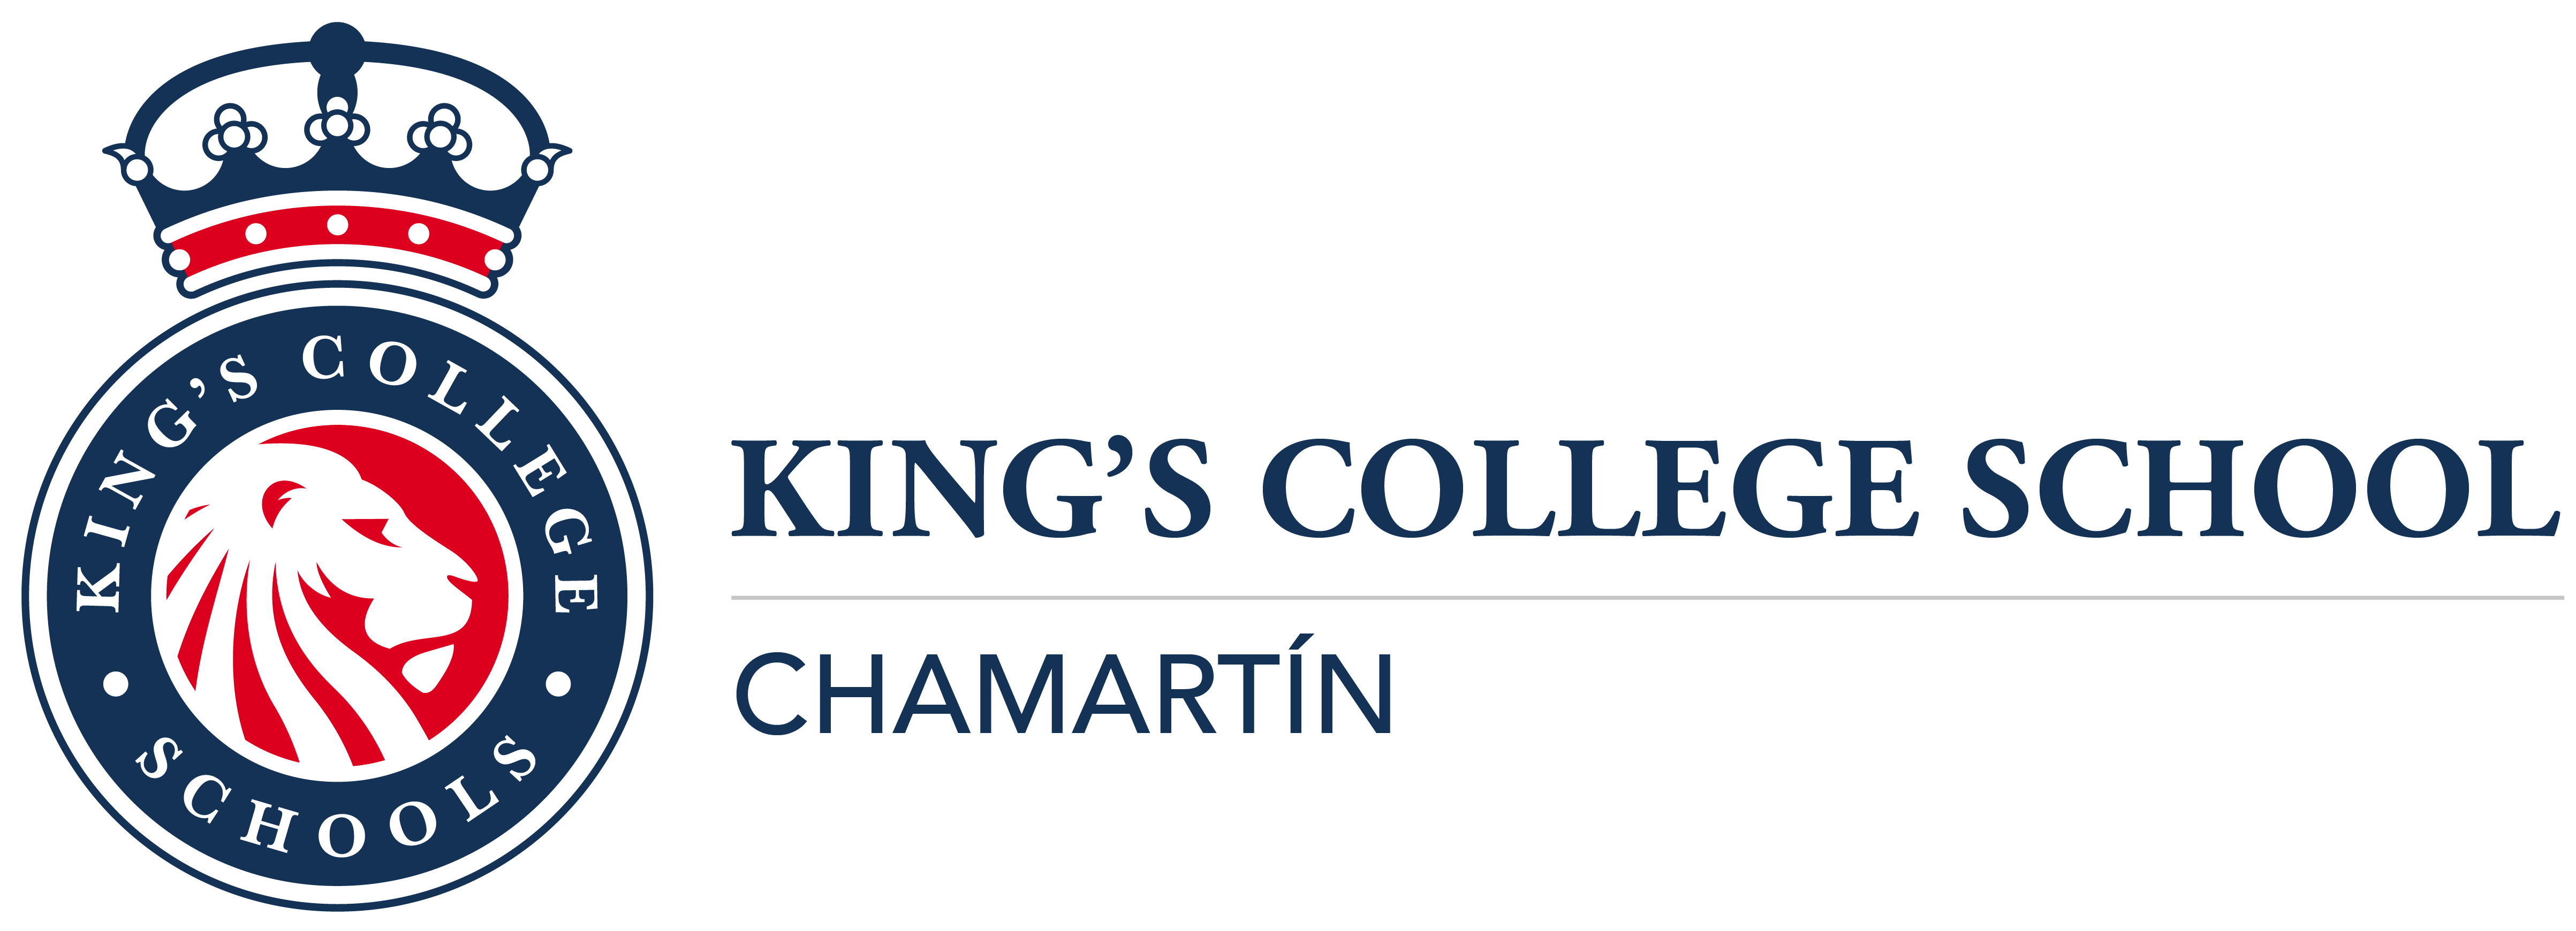 Логотип британской частной школы King’s Infant School-Chamartin Чамартин Мадрид Испания с 1 до 7 лет studyspain.eu